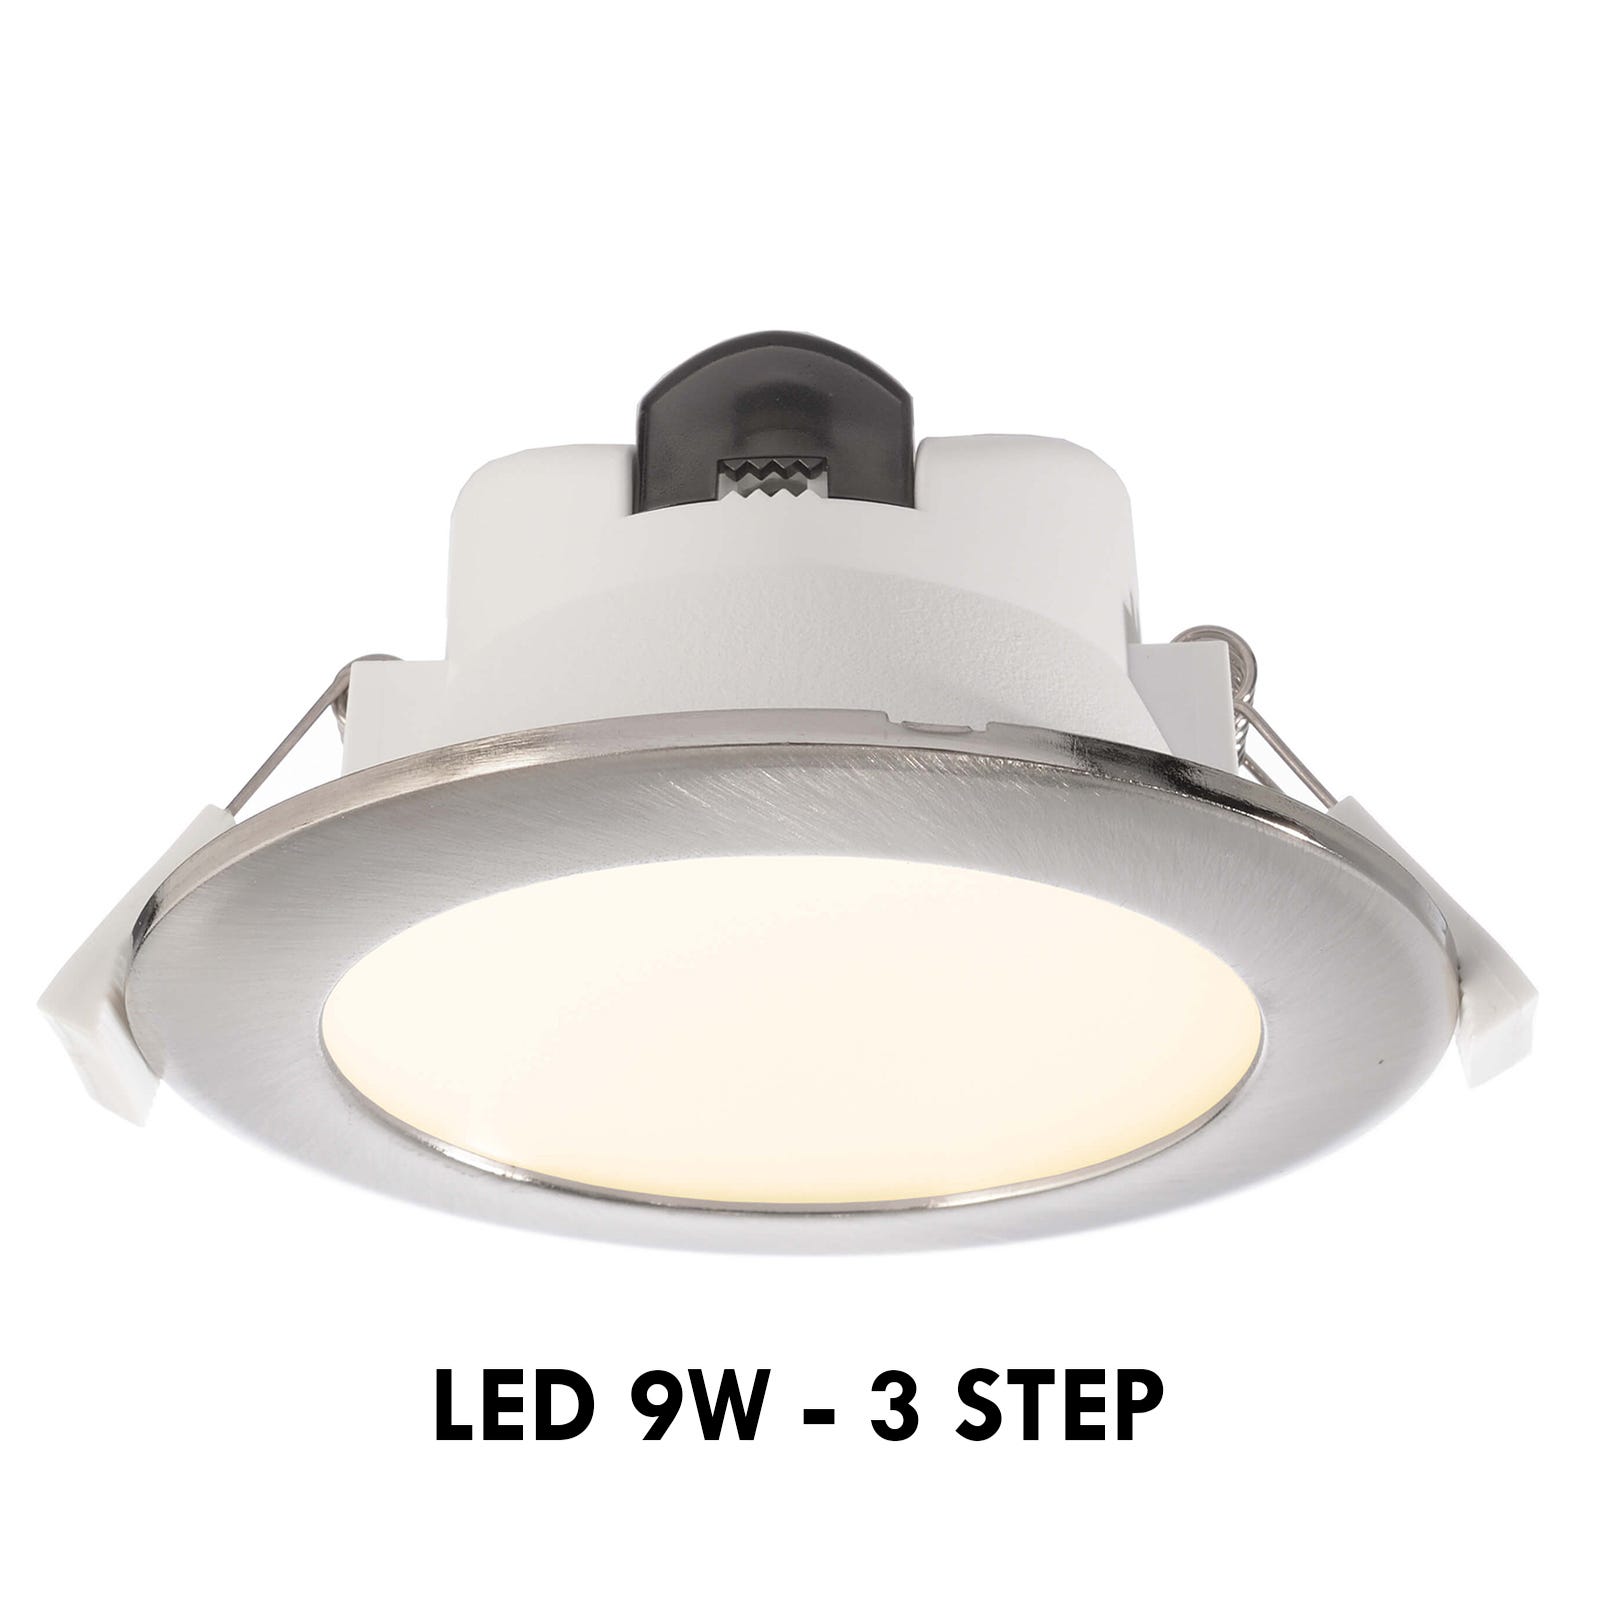 Foco LED pequeño, 9 luces de techo empotradas de 12 V 1 W para cocina,  escaleras, armario, pasillo, iluminación de bricolaje, blanco cálido,  blanco